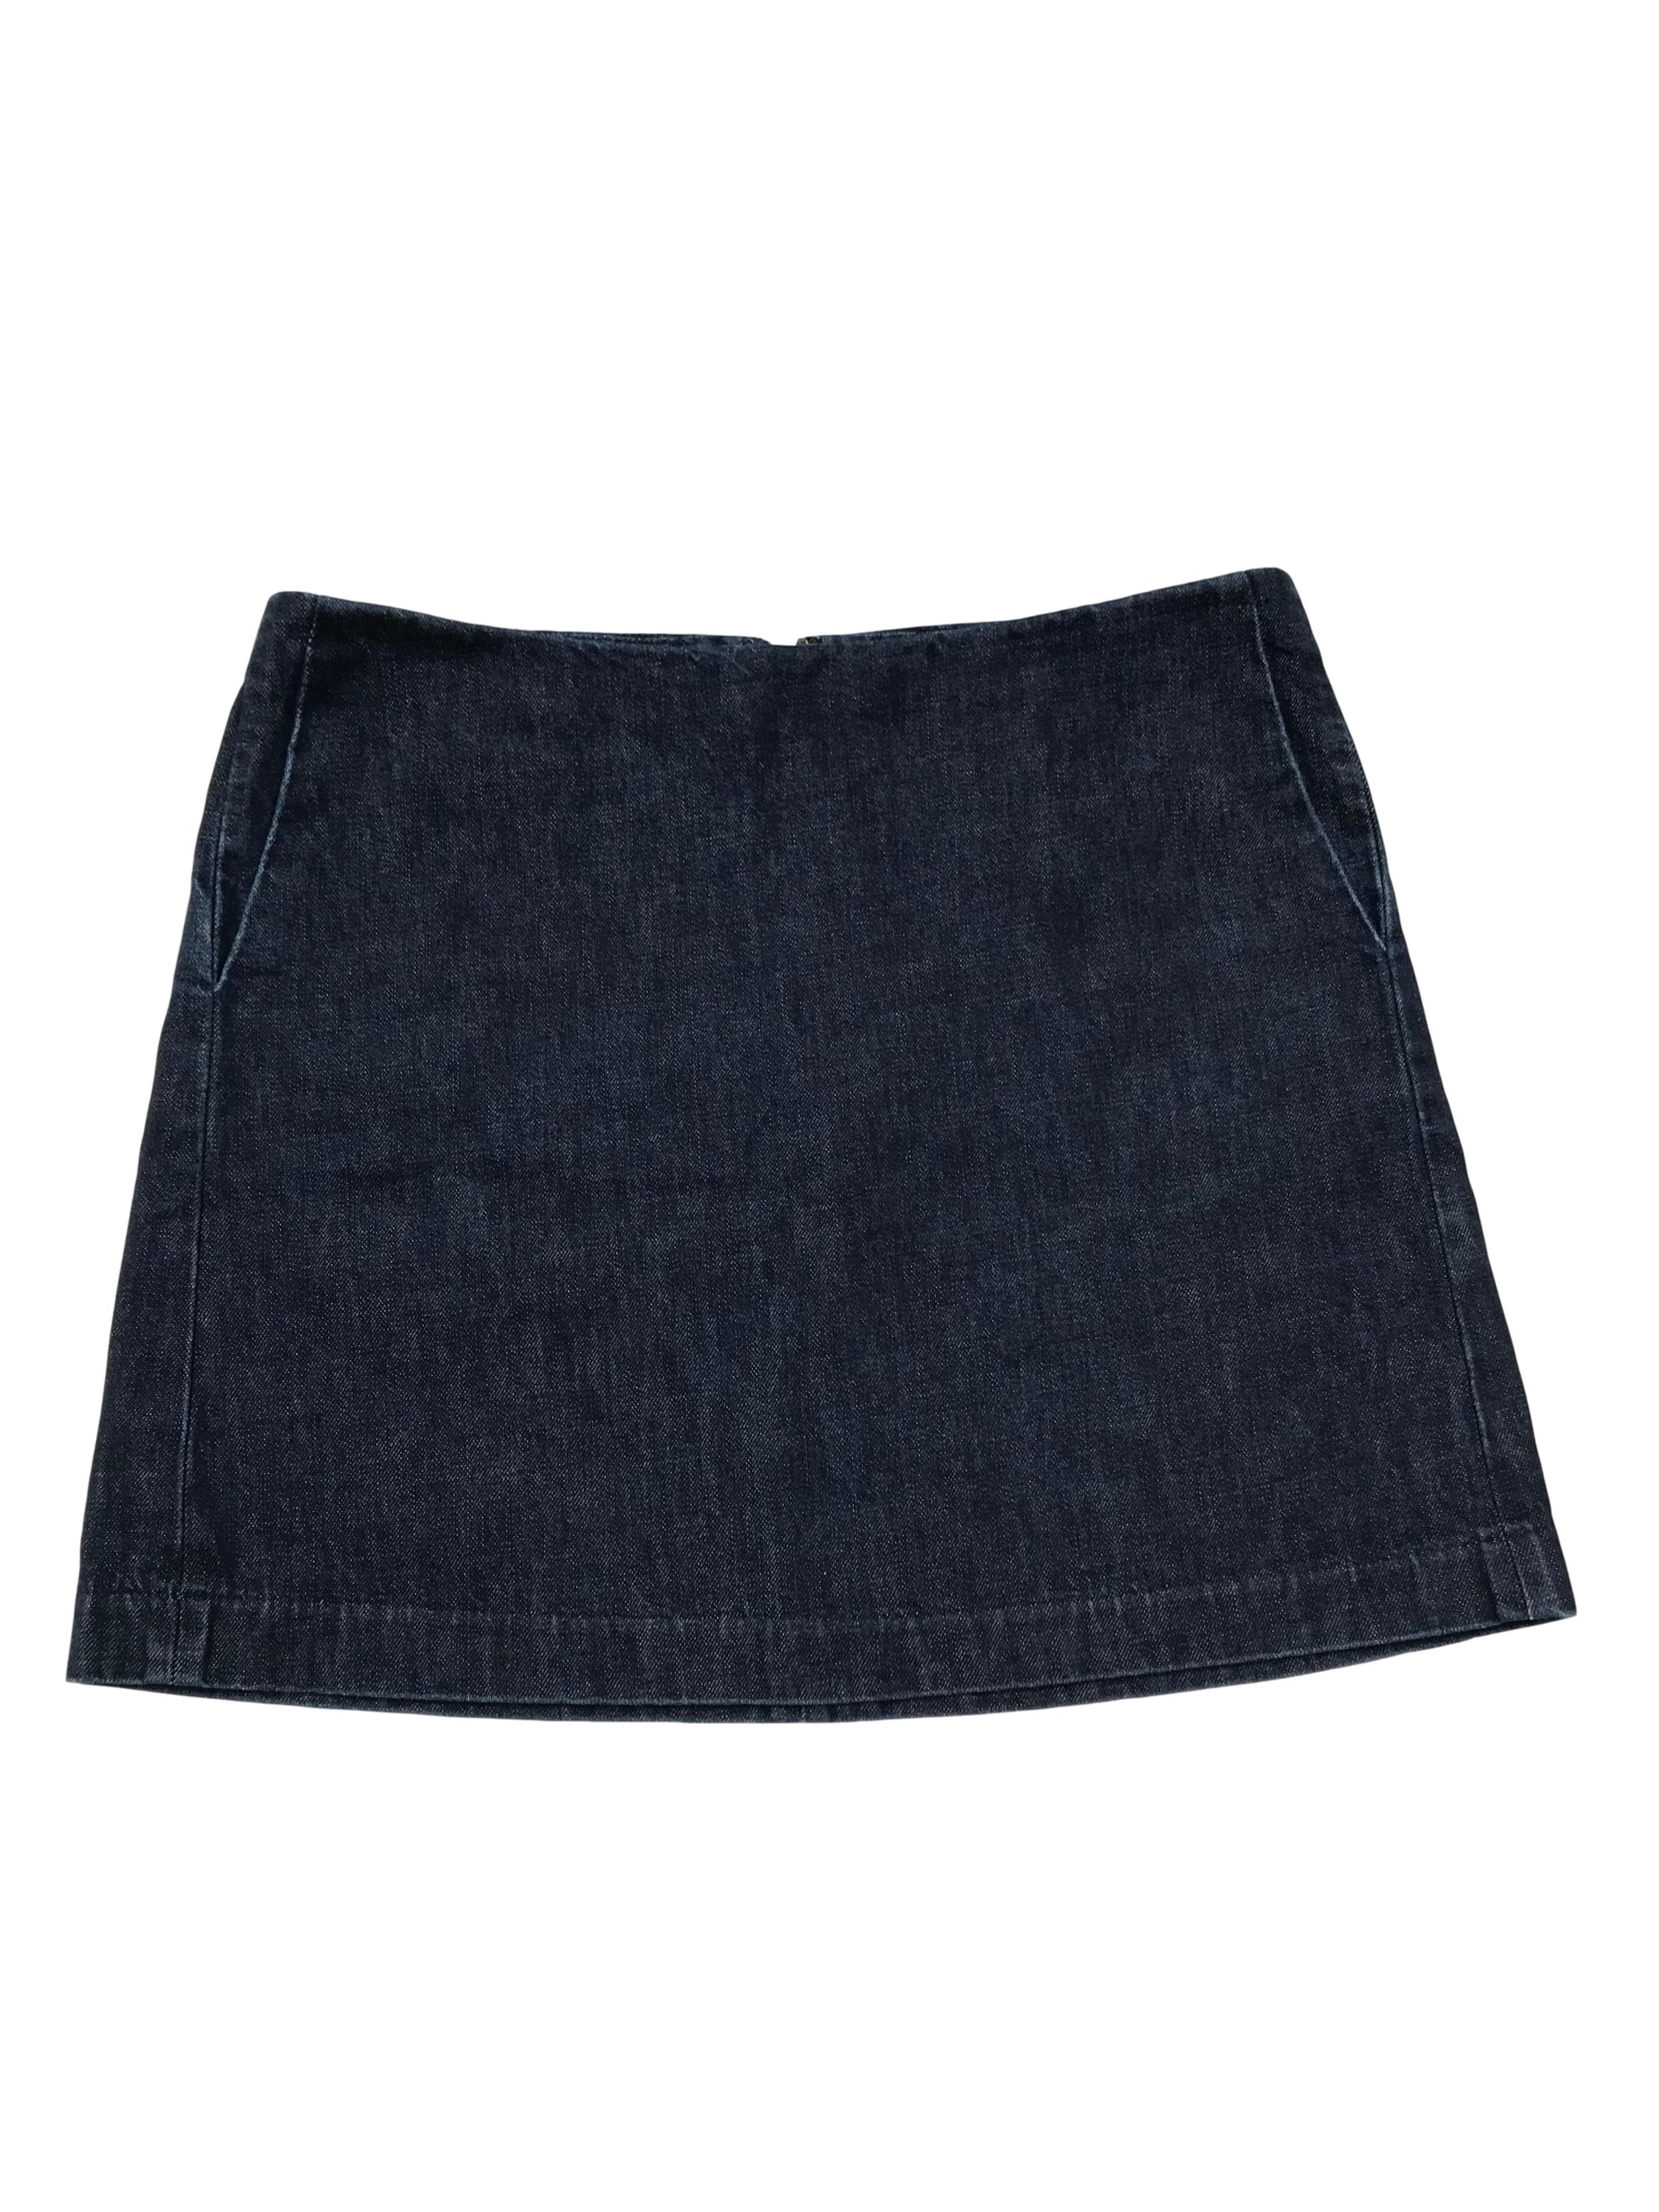 Falda Gap de denim grueso 100% algodón con bolsillos laterales y cierre posterior. Pretina 86cm Largo 43cm.